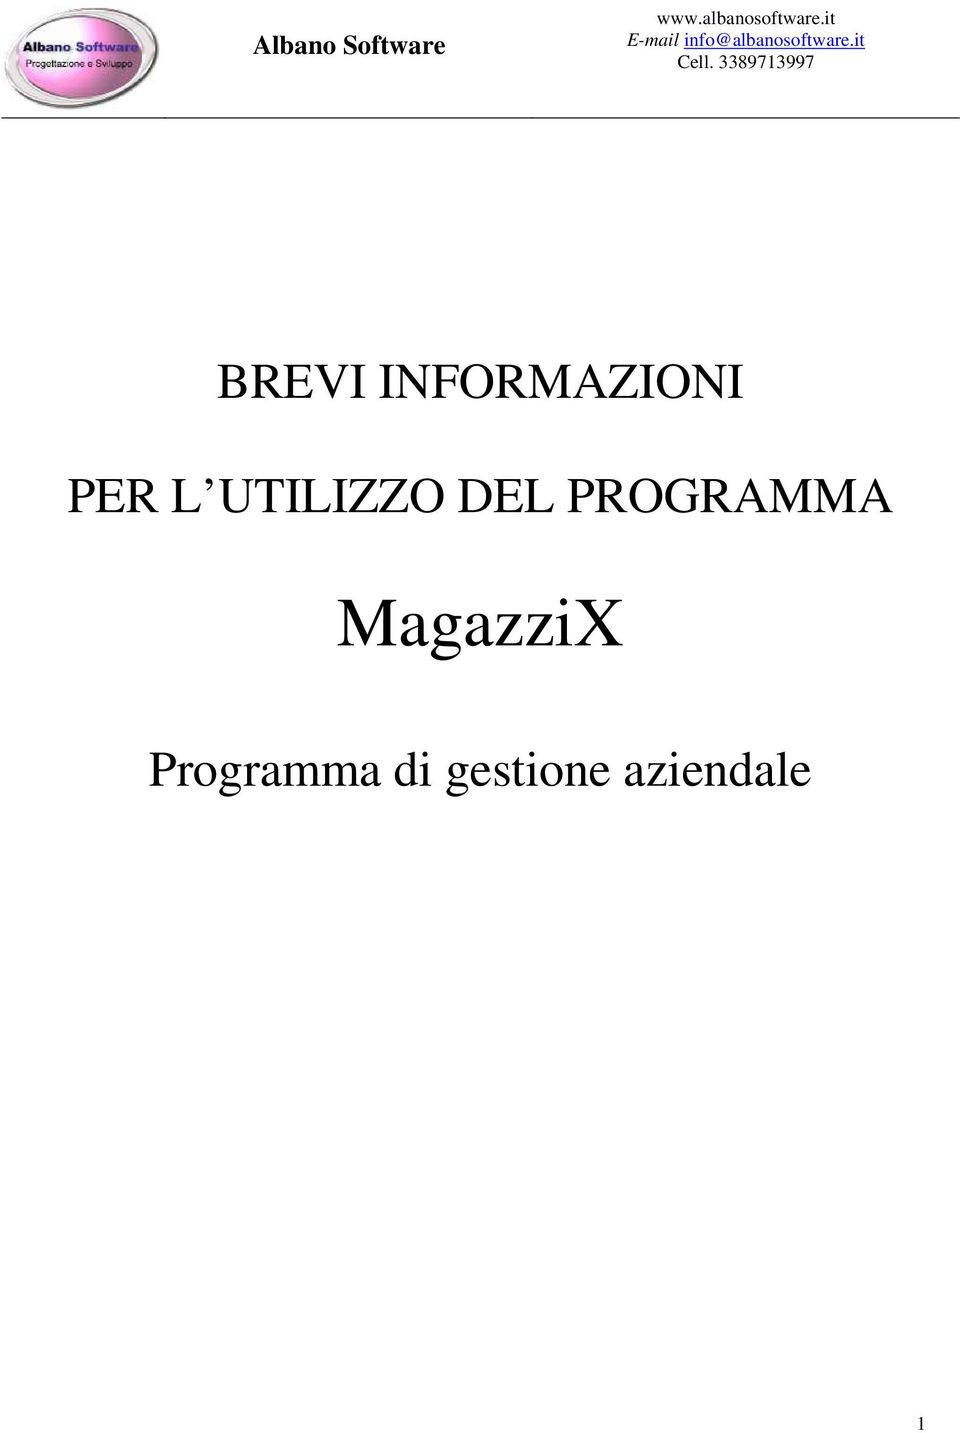 PROGRAMMA MagazziX